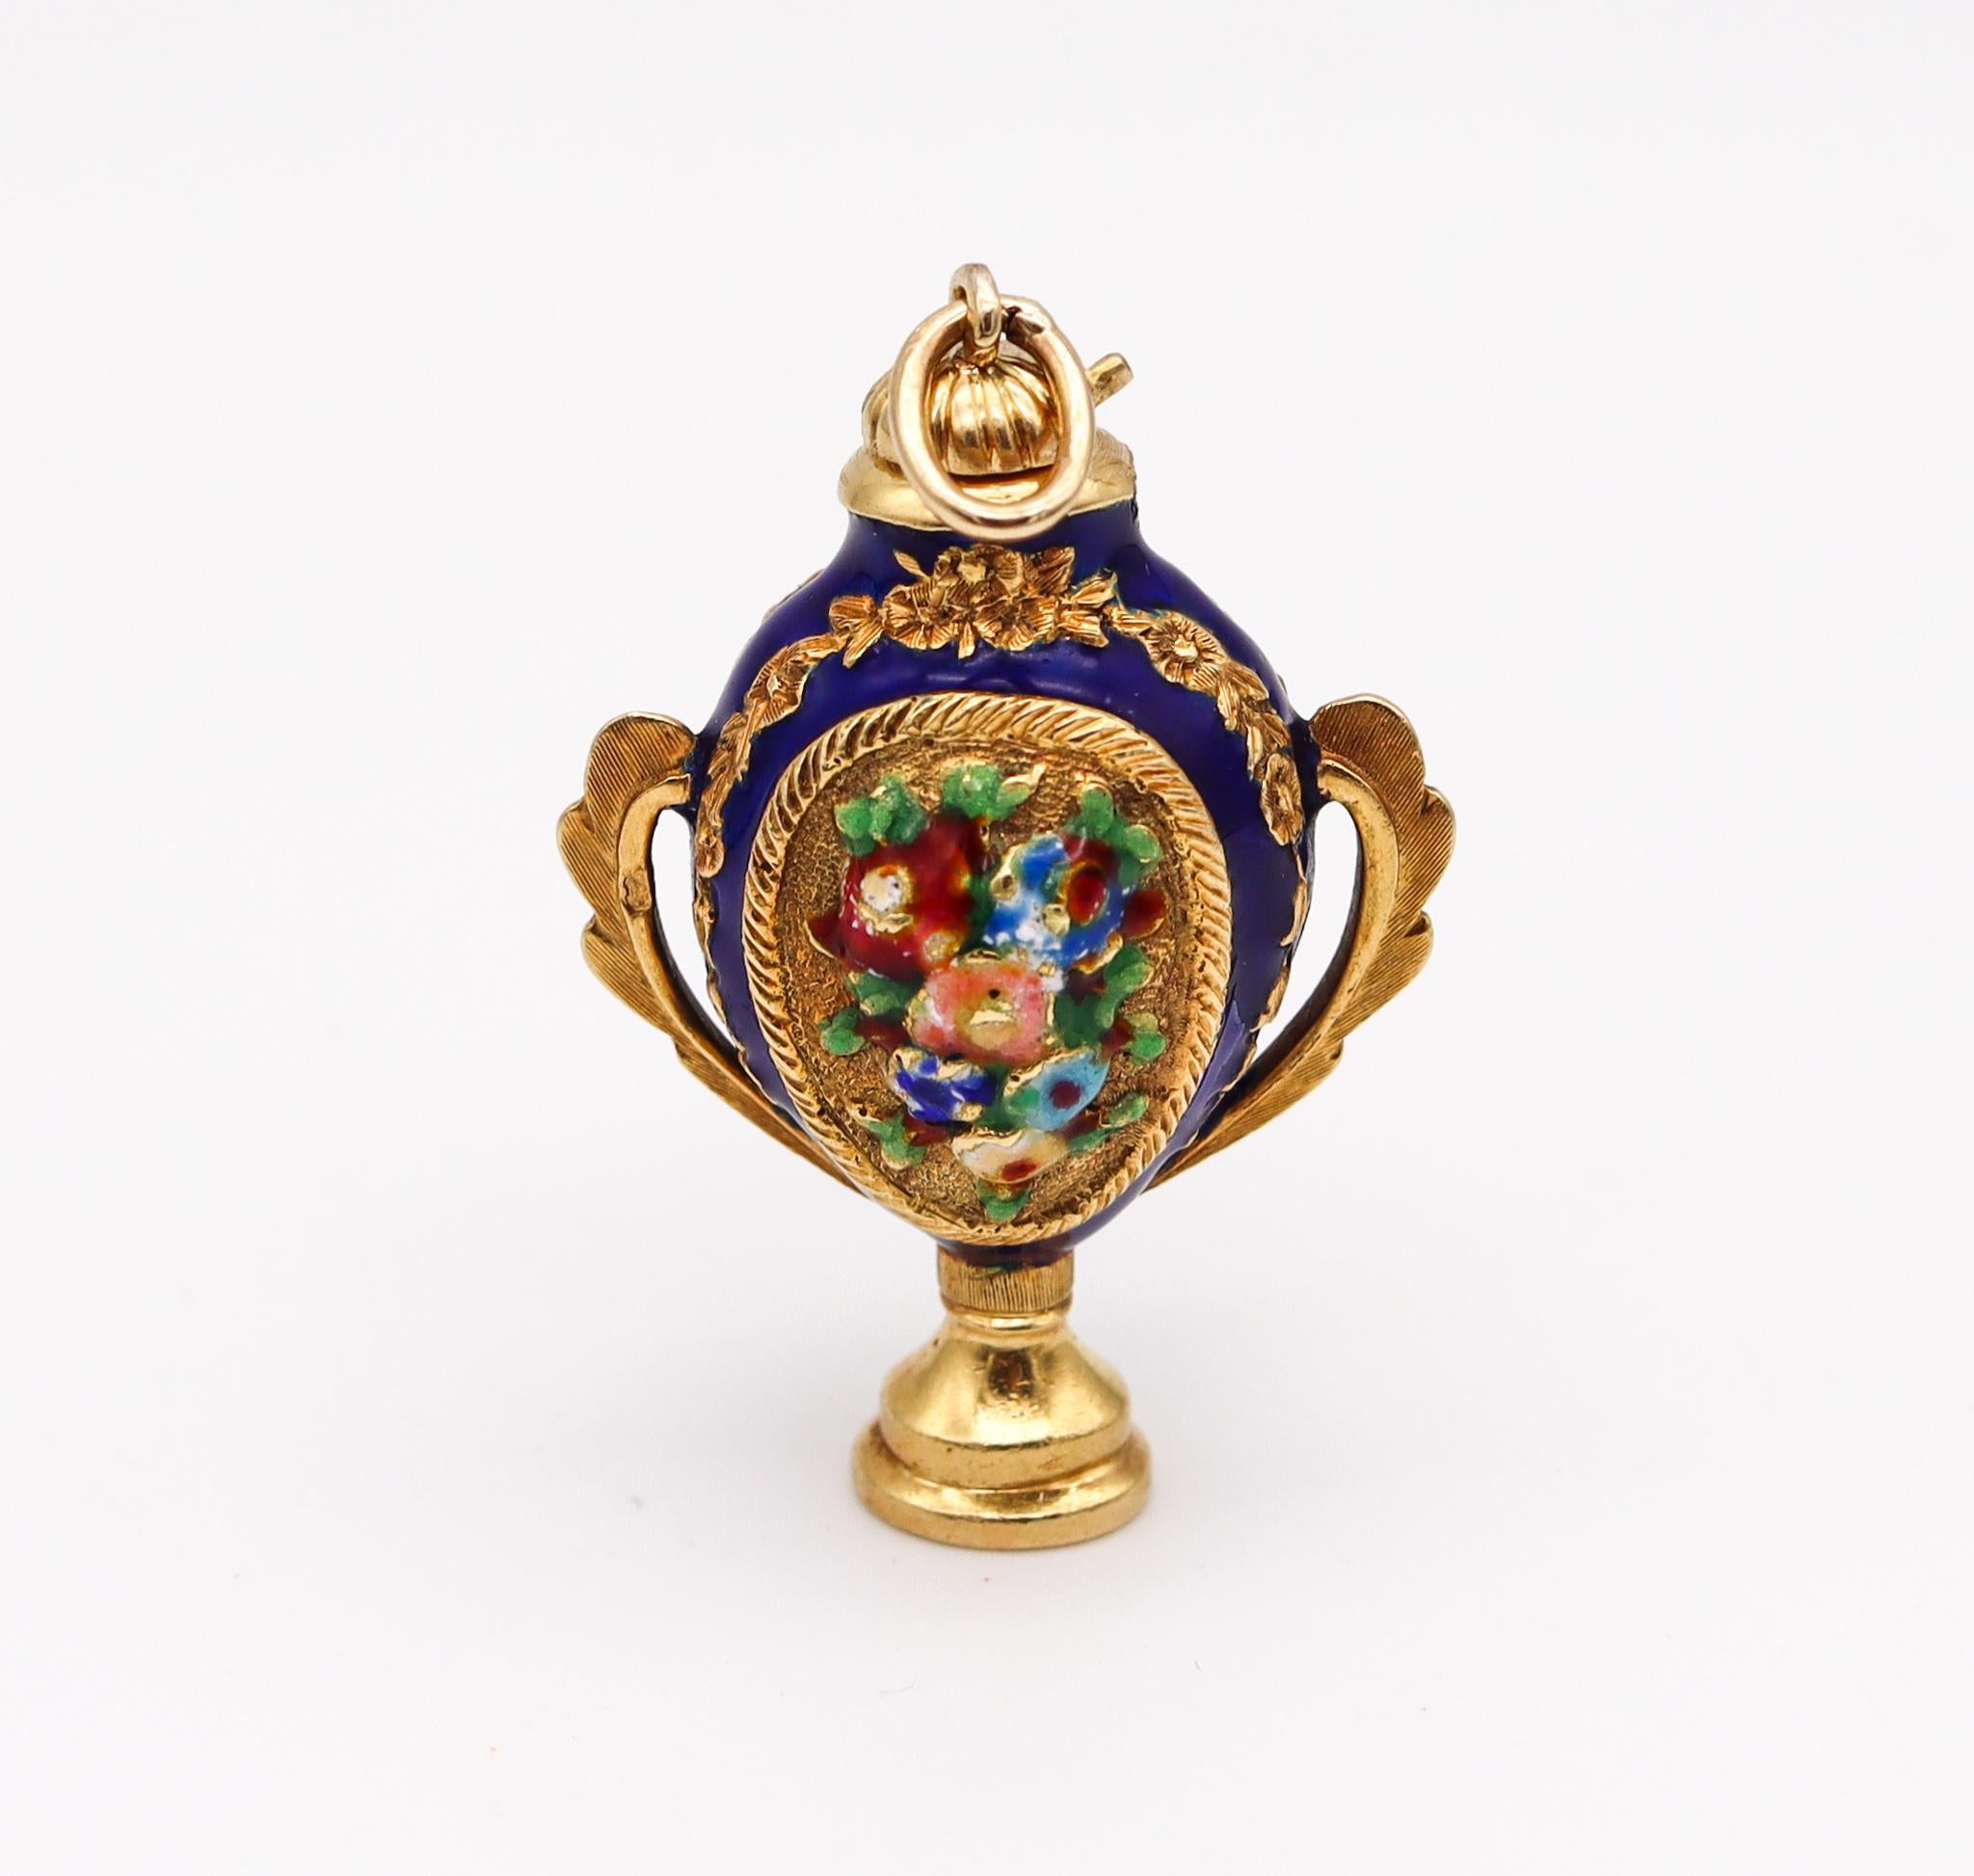 Baroque Revival Italian 1960 Venetian Enameled Pendant Amphora Bottle for Perfume in 18kt Gold For Sale